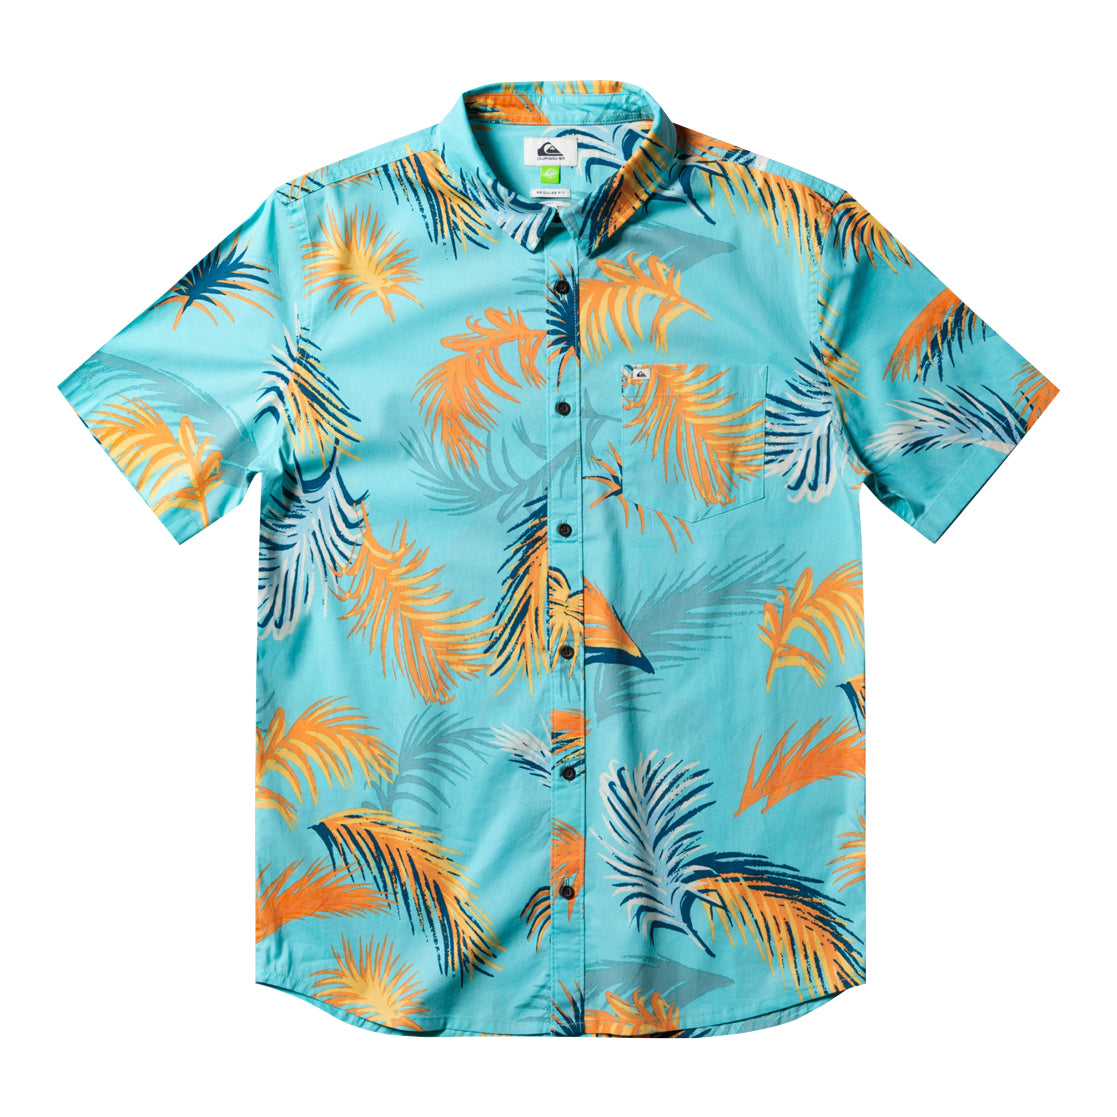 Quiksilver Tropical Gultch SS Shirt BGD6 M